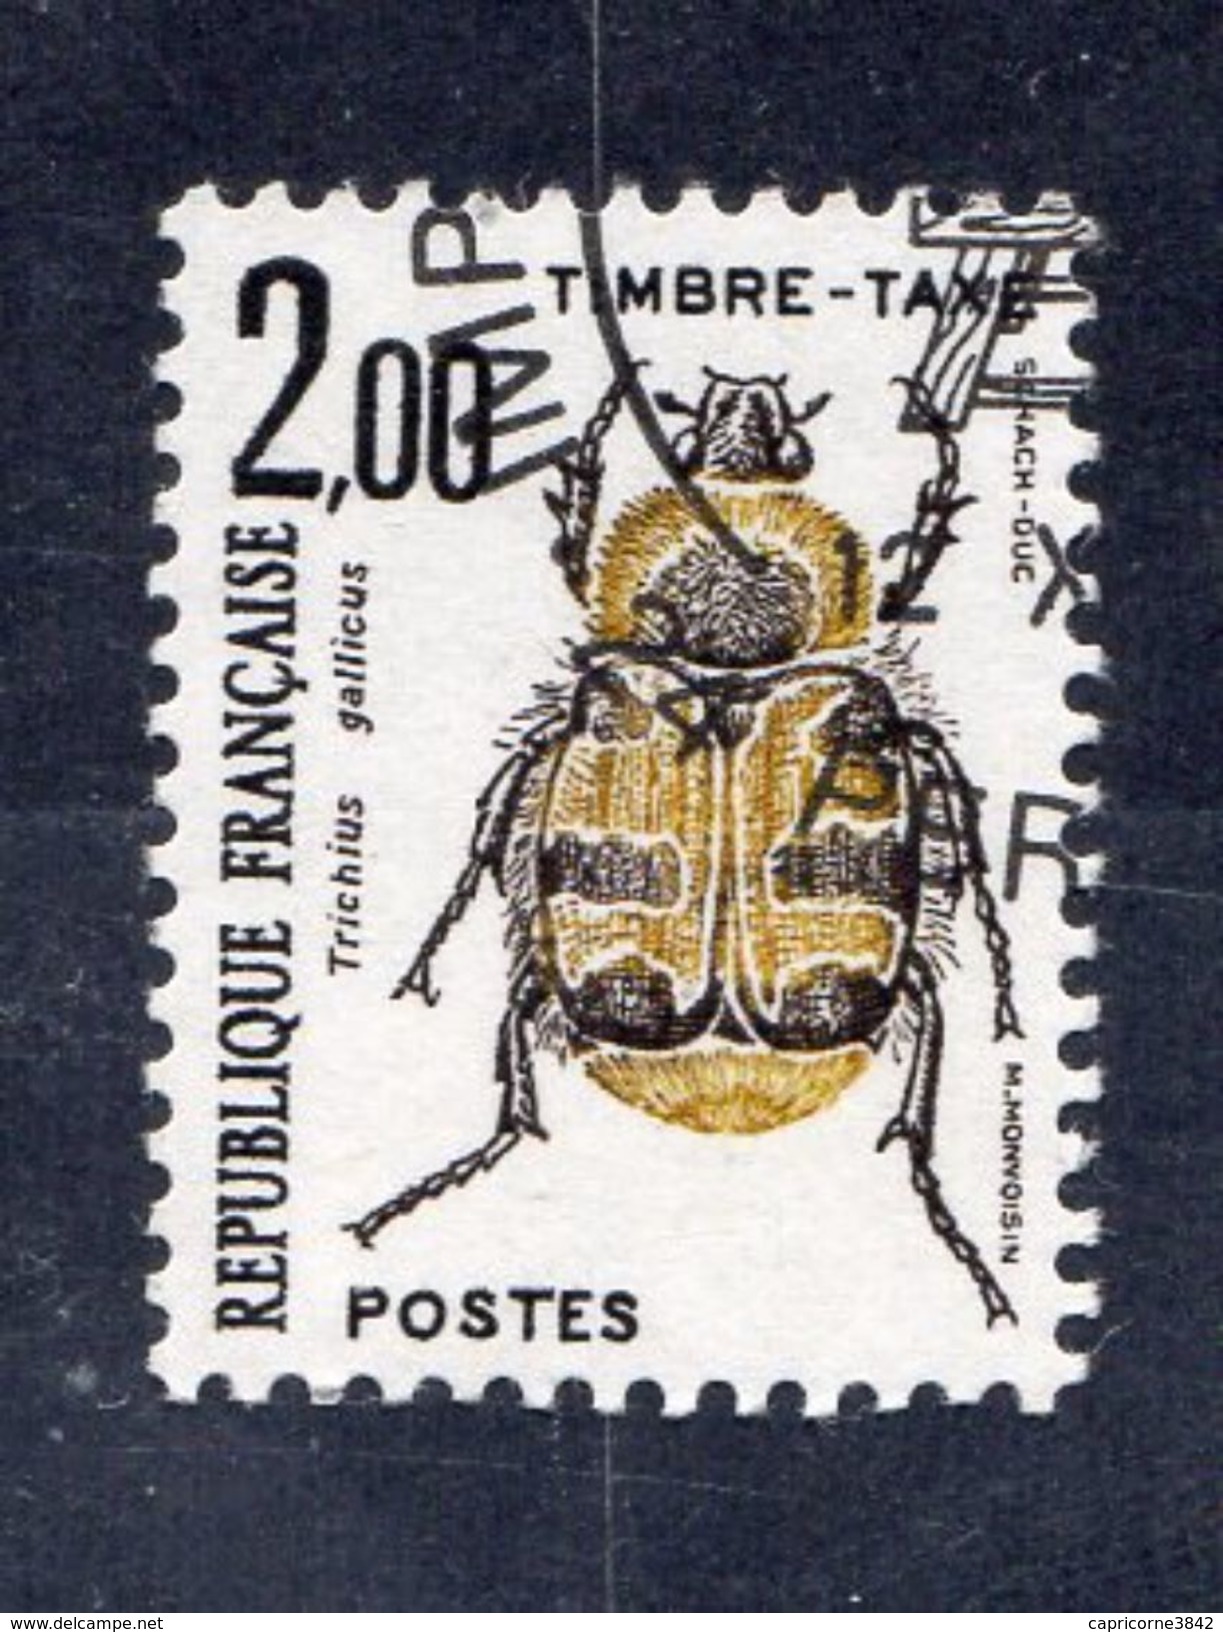 Timbre Taxe "Coléoptère" N° 107 - Neuf  - Préoblitéré Cachet "Imprimerie Des Timbres-Poste De Périgueux" - 1960-... Ungebraucht